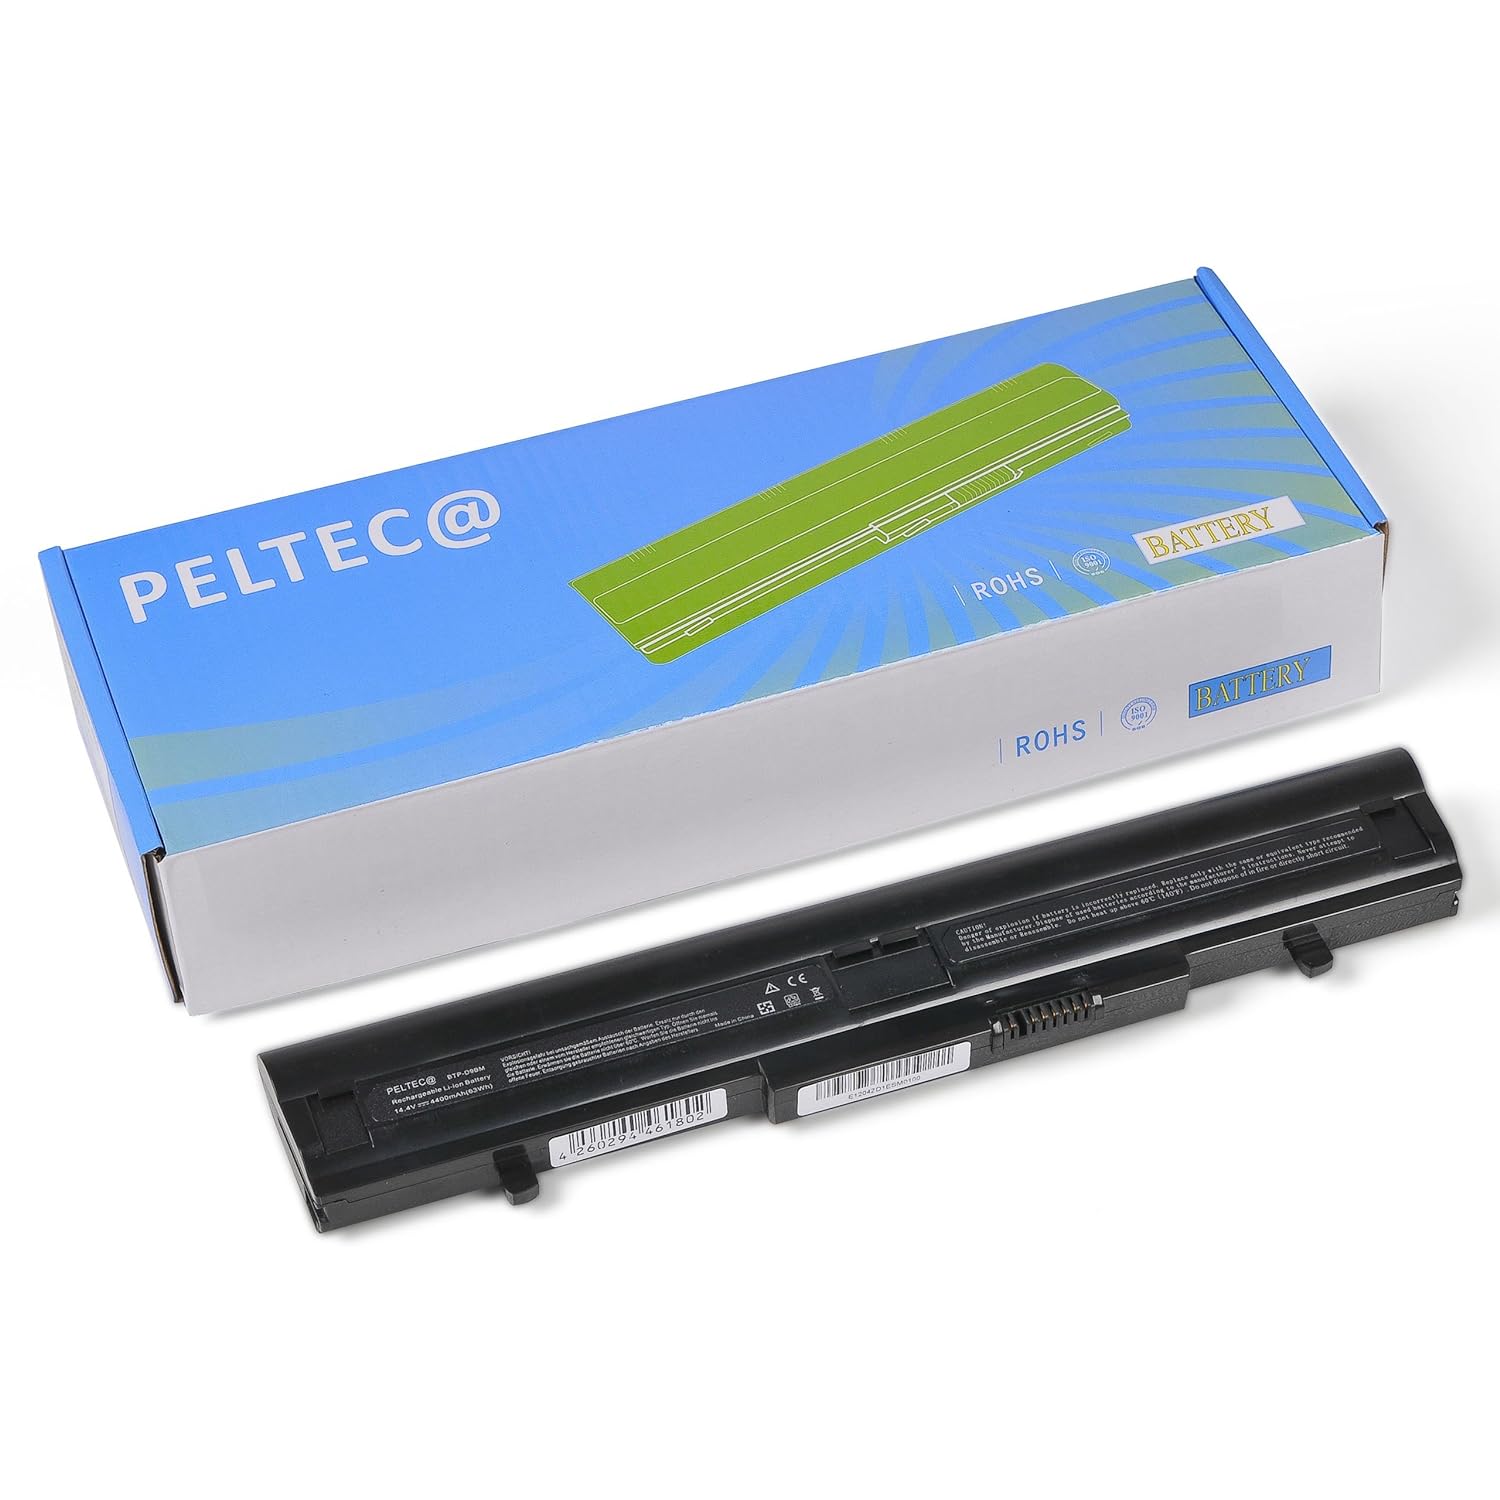 PELTEC@ Premium Notebook Laptop AKKU 4400mAh